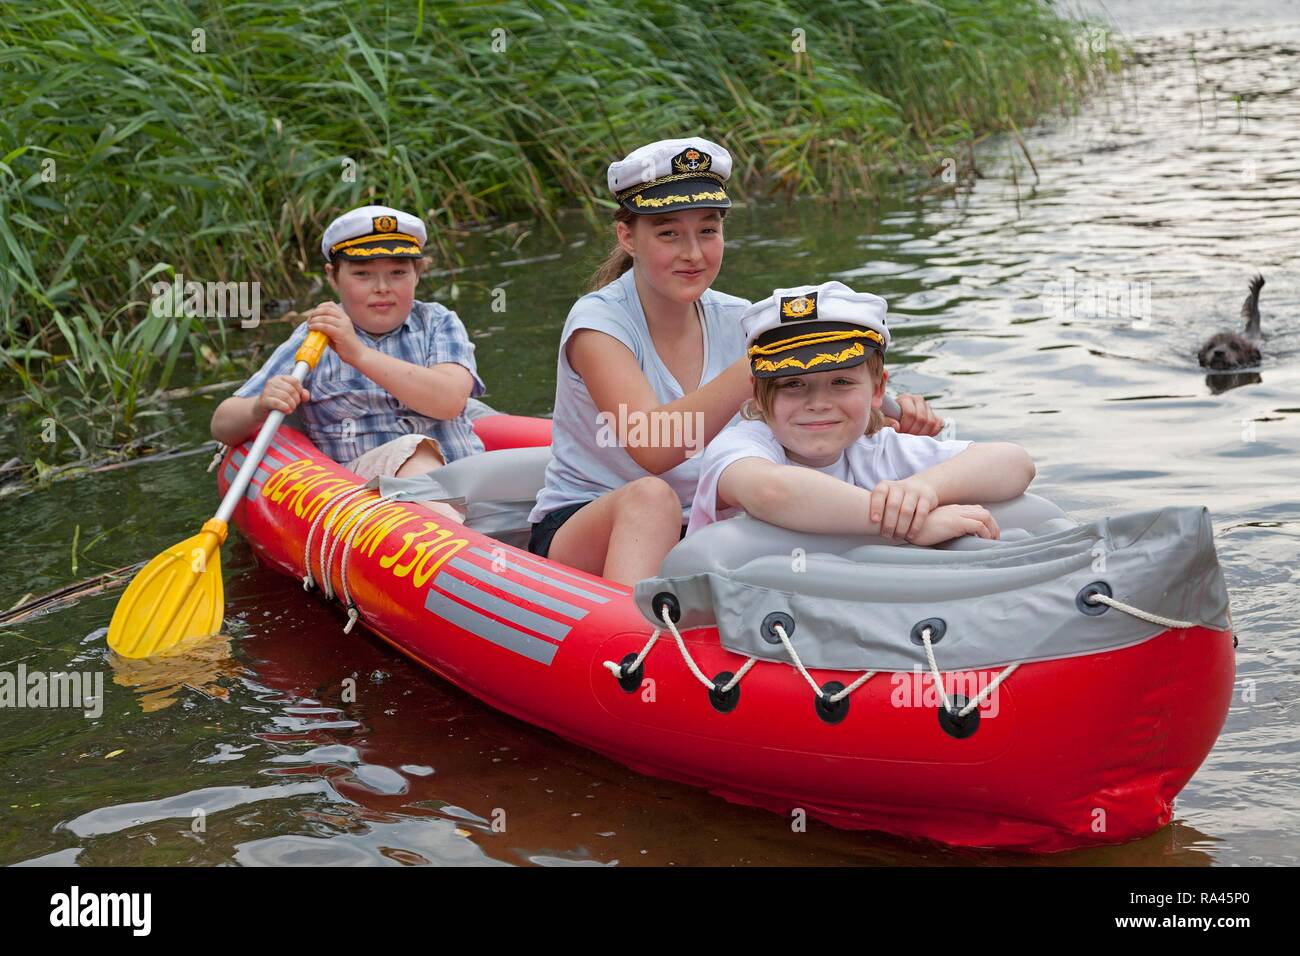 Kinder in einem Schlauchboot, Schlauchboote, Barumer See, Barum,  Niedersachsen, Deutschland Stockfotografie - Alamy